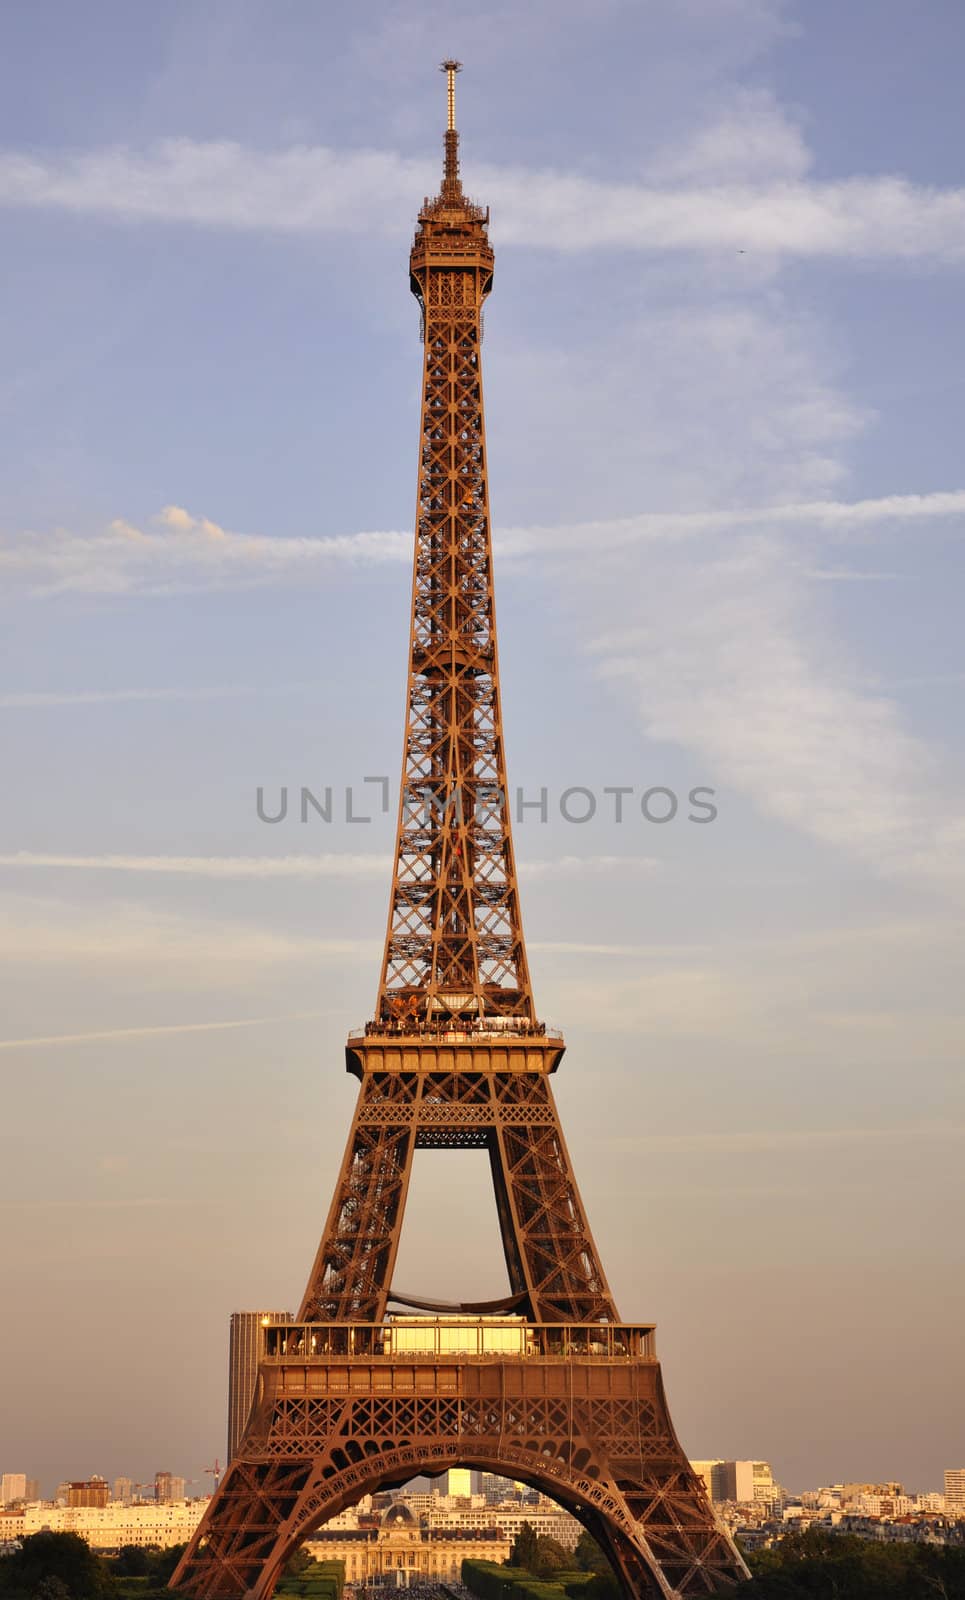 La Tour Eiffel by kdreams02